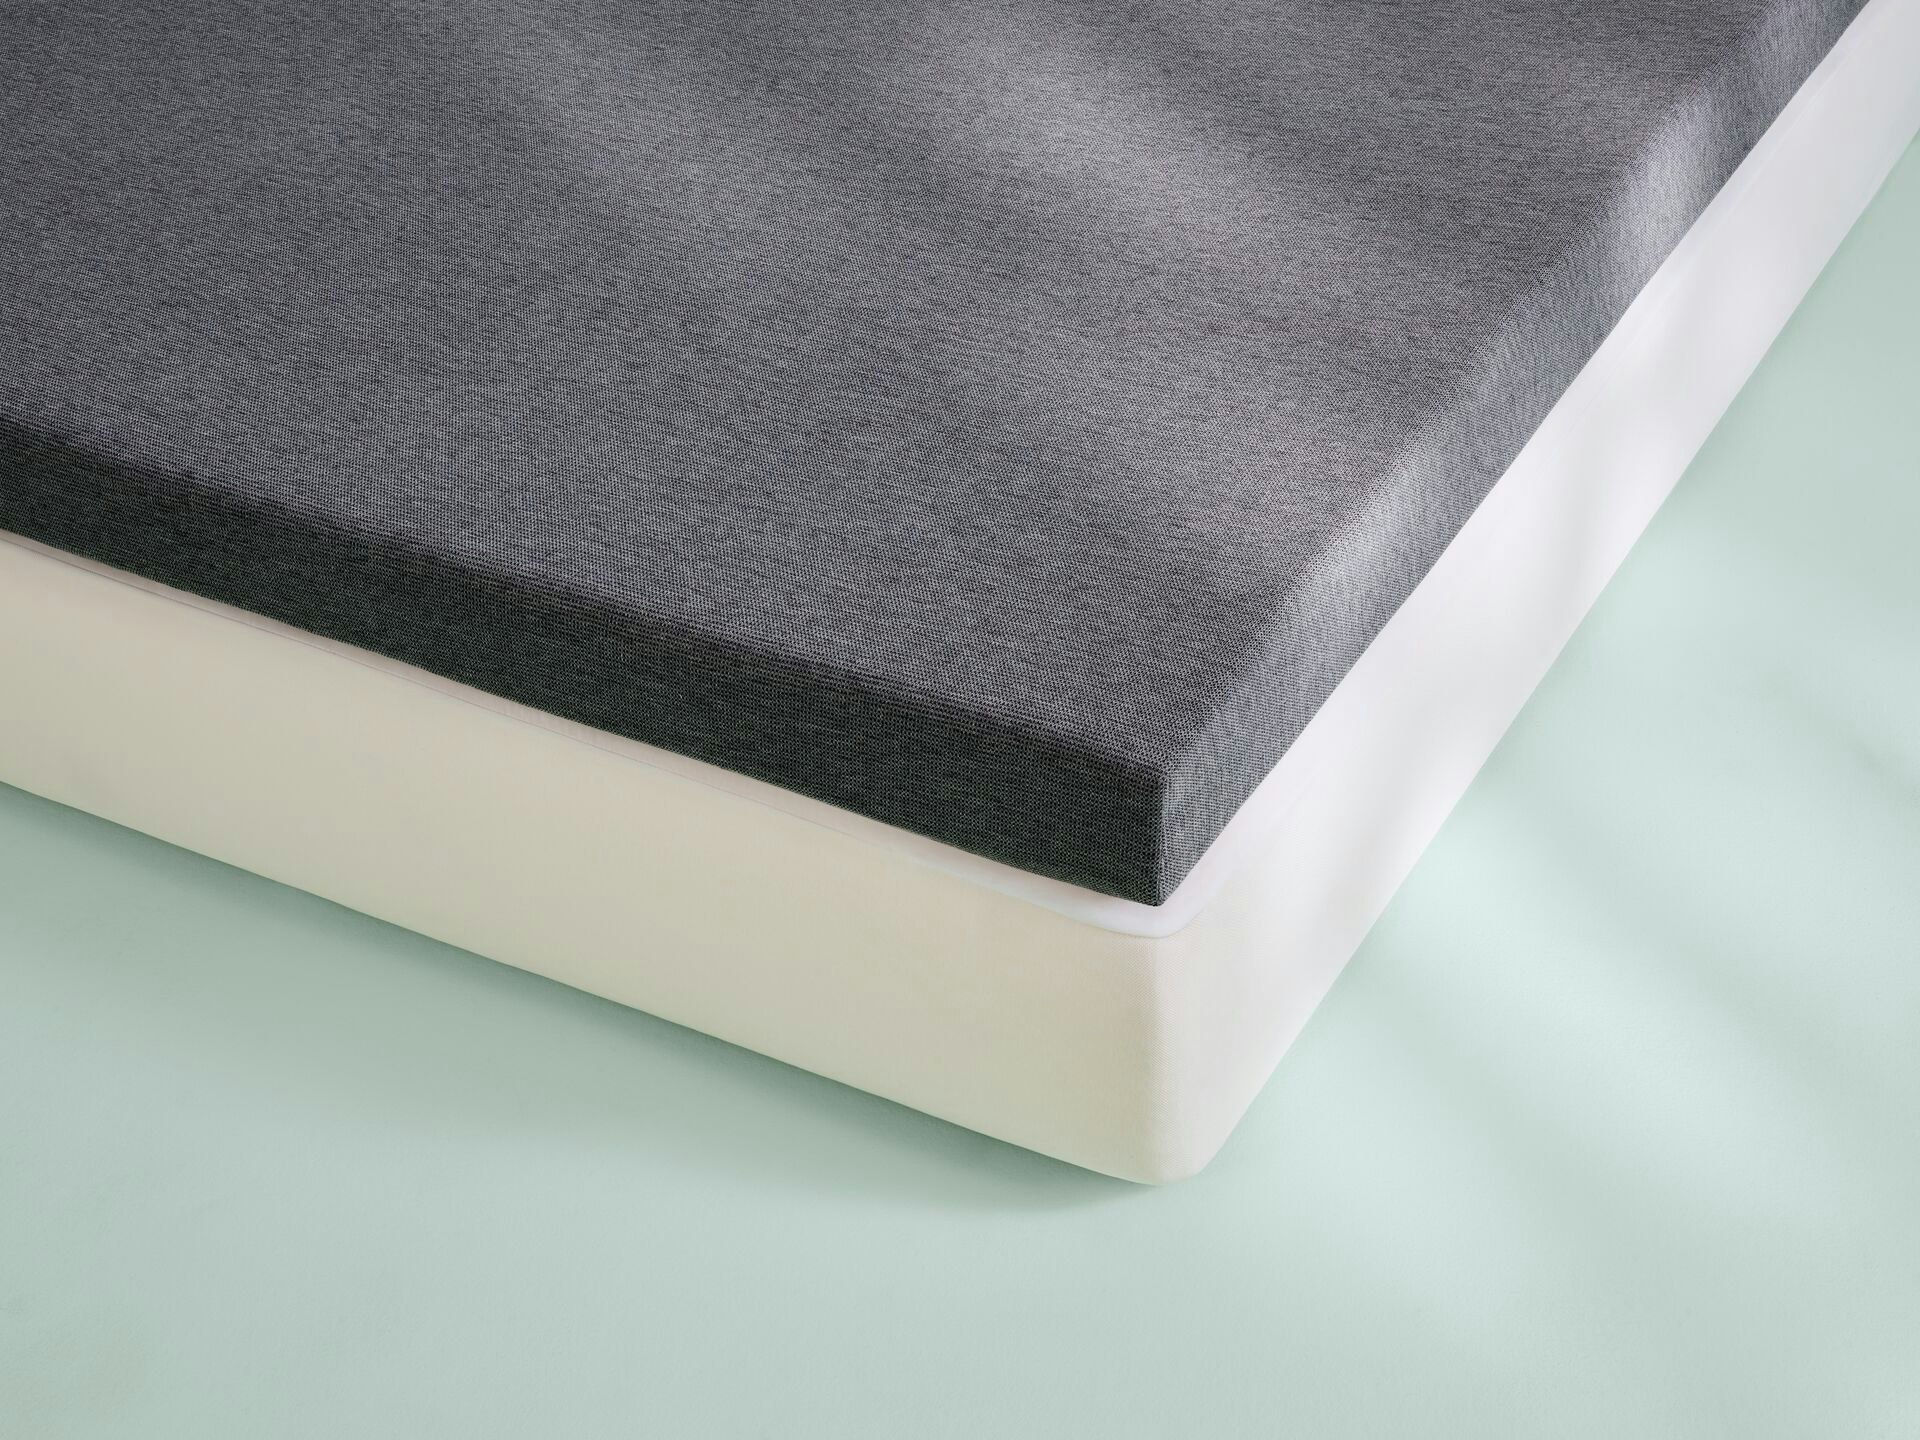 mattress topper vs new mattress